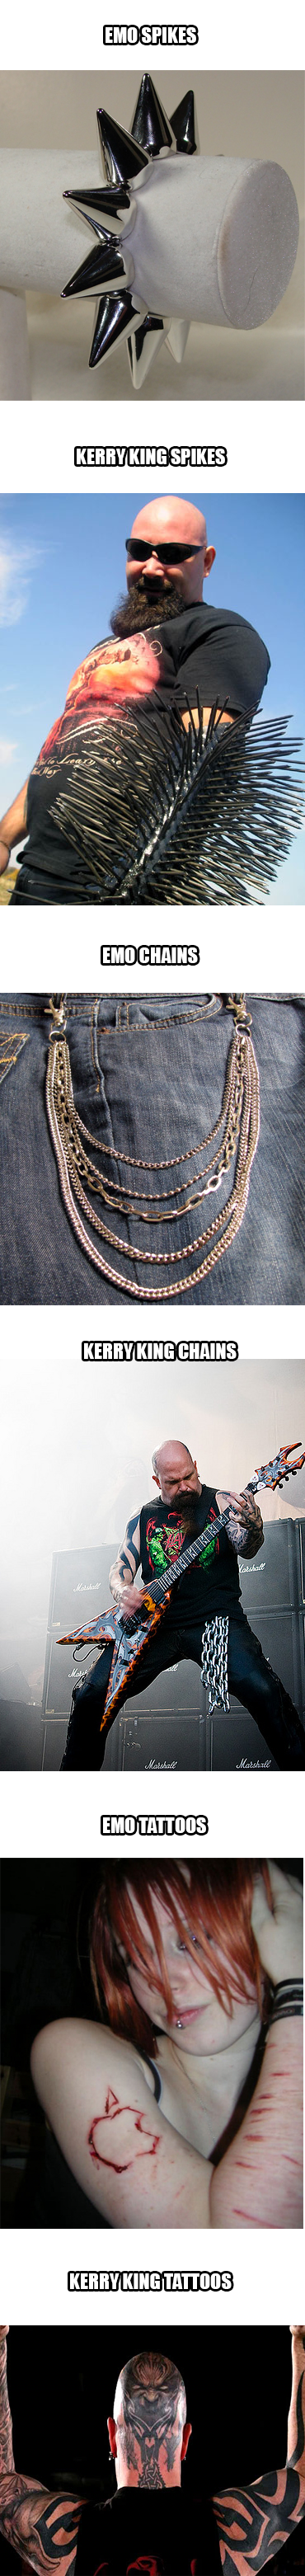 Kerry King vs Emos